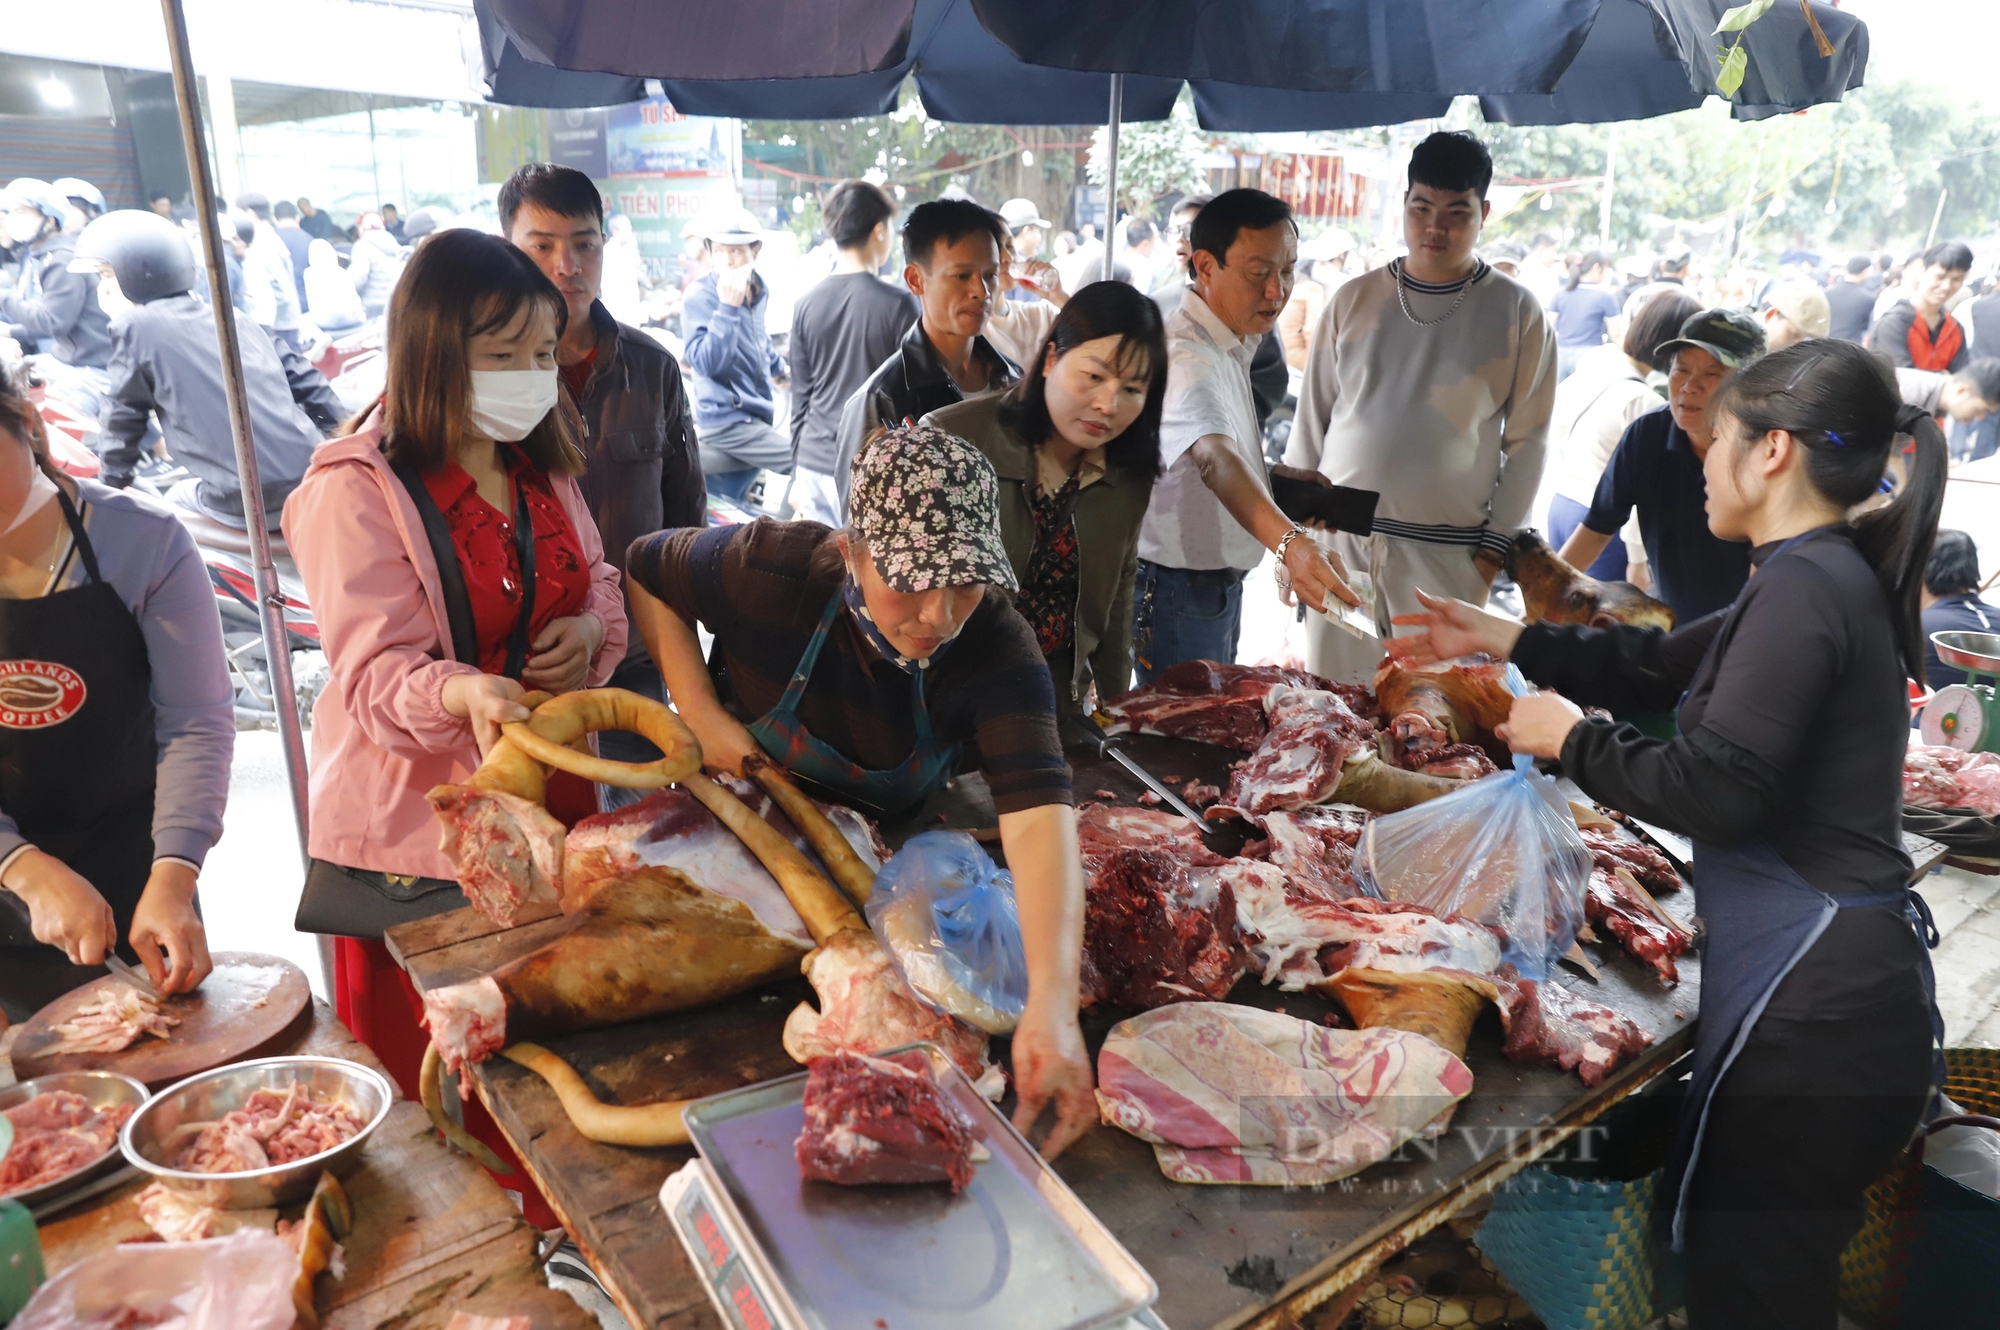 Phí đổi tiền lẻ lên tới 18%, thịt bò giá 250.000 đồng/kg tại chợ Viềng, Phủ Dầy Nam Định hút khách- Ảnh 7.